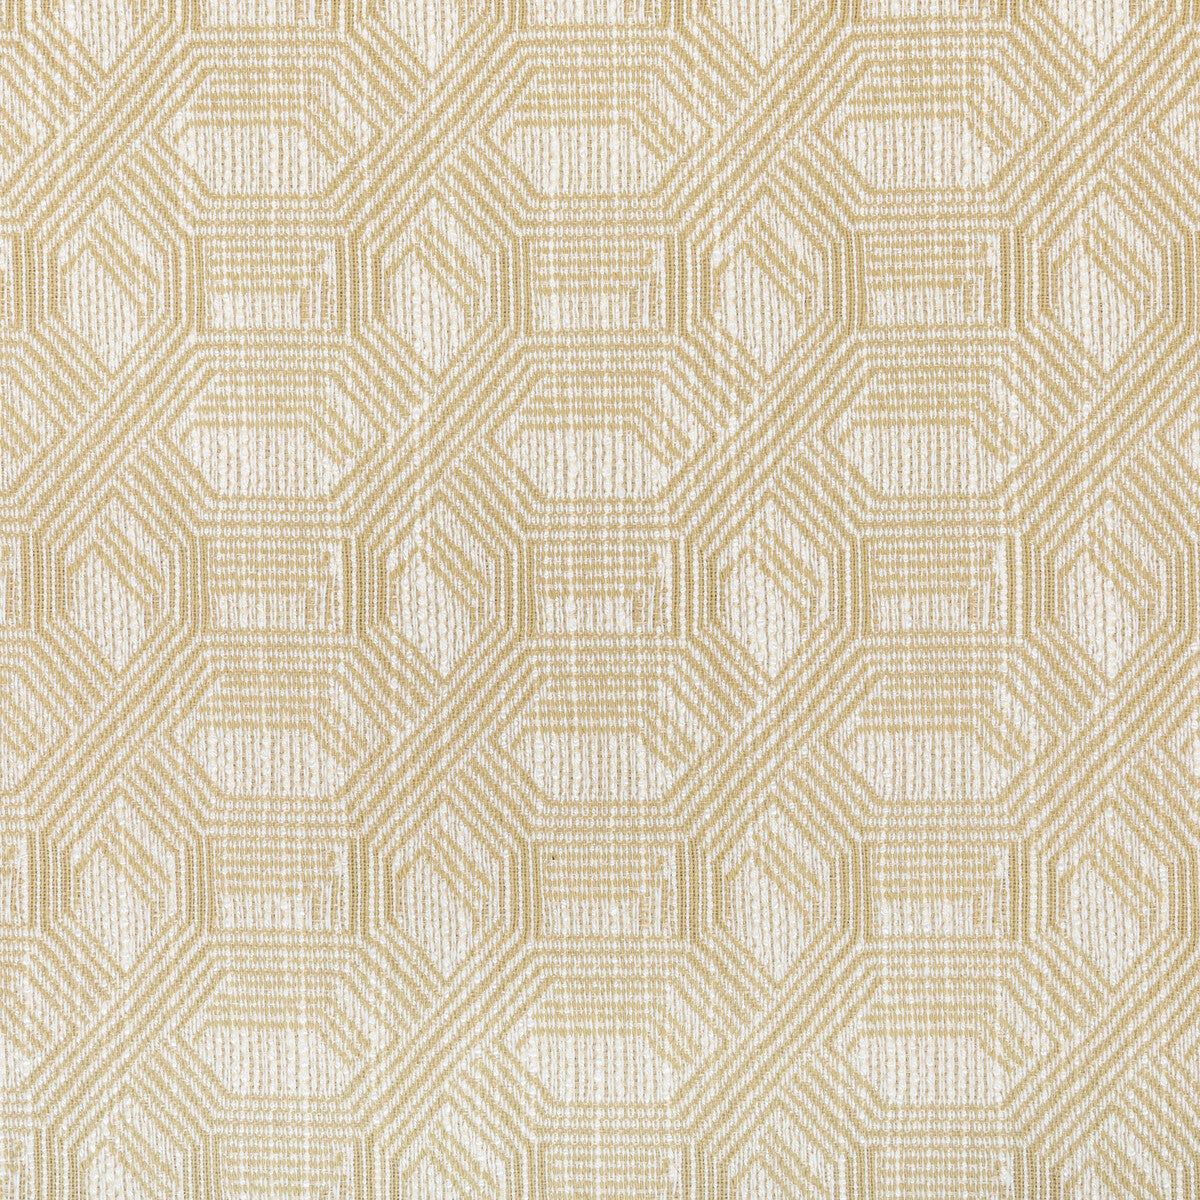 Kravet Design fabric in 36678-16 color - pattern 36678.16.0 - by Kravet Design